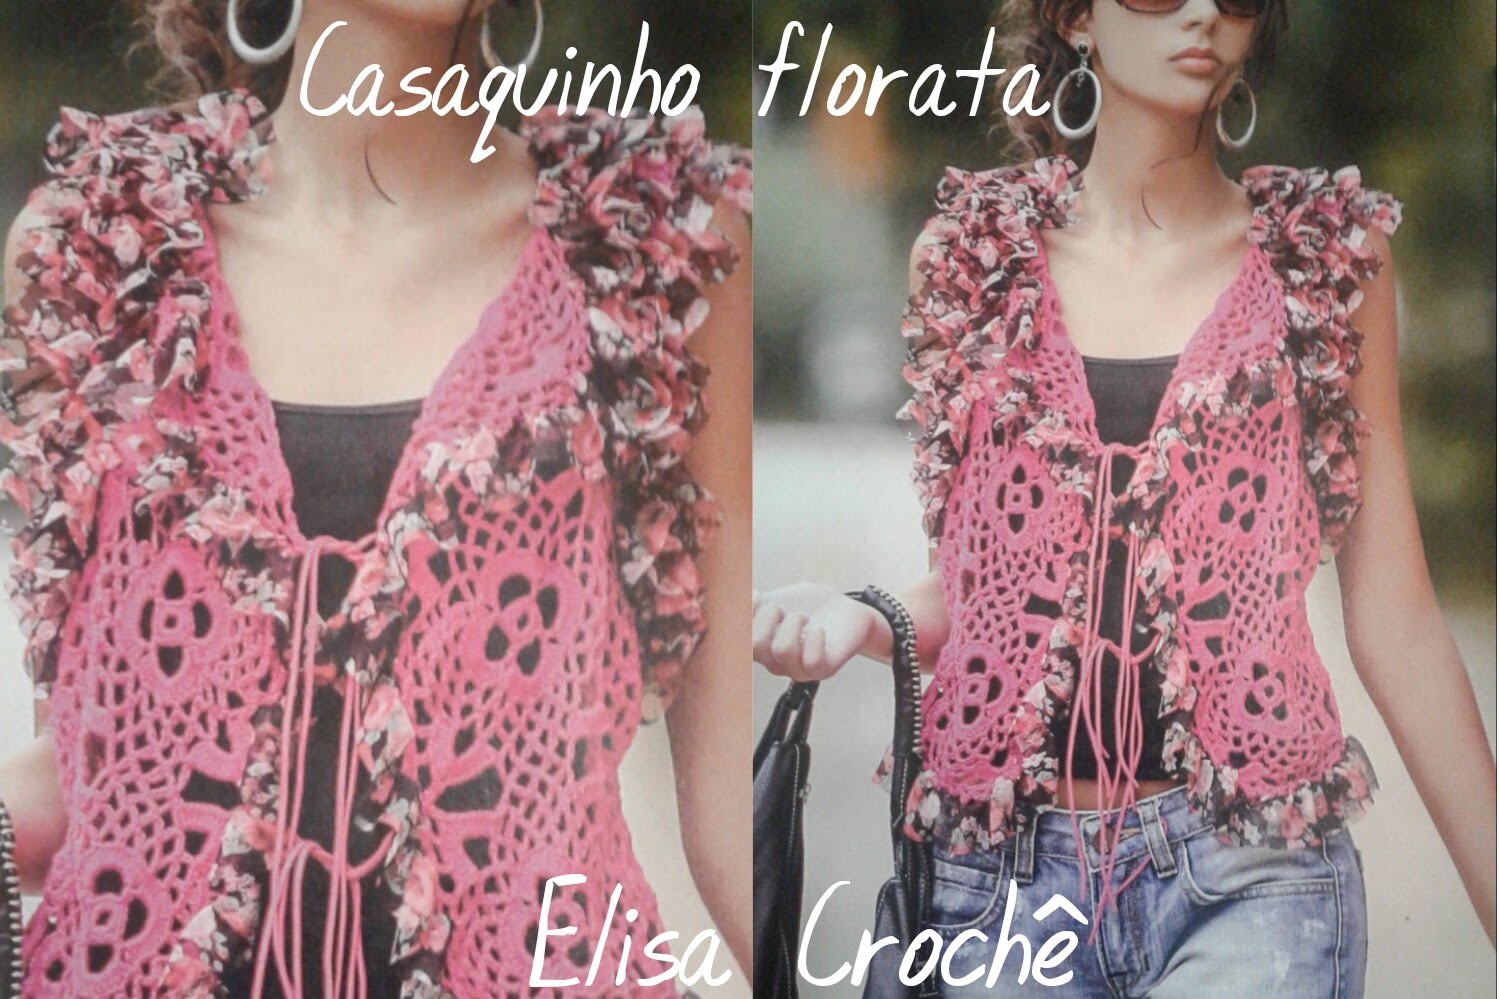 Versao canhoto:Casaquinho florata em Crochê ( explicação) # Elisa Crochê